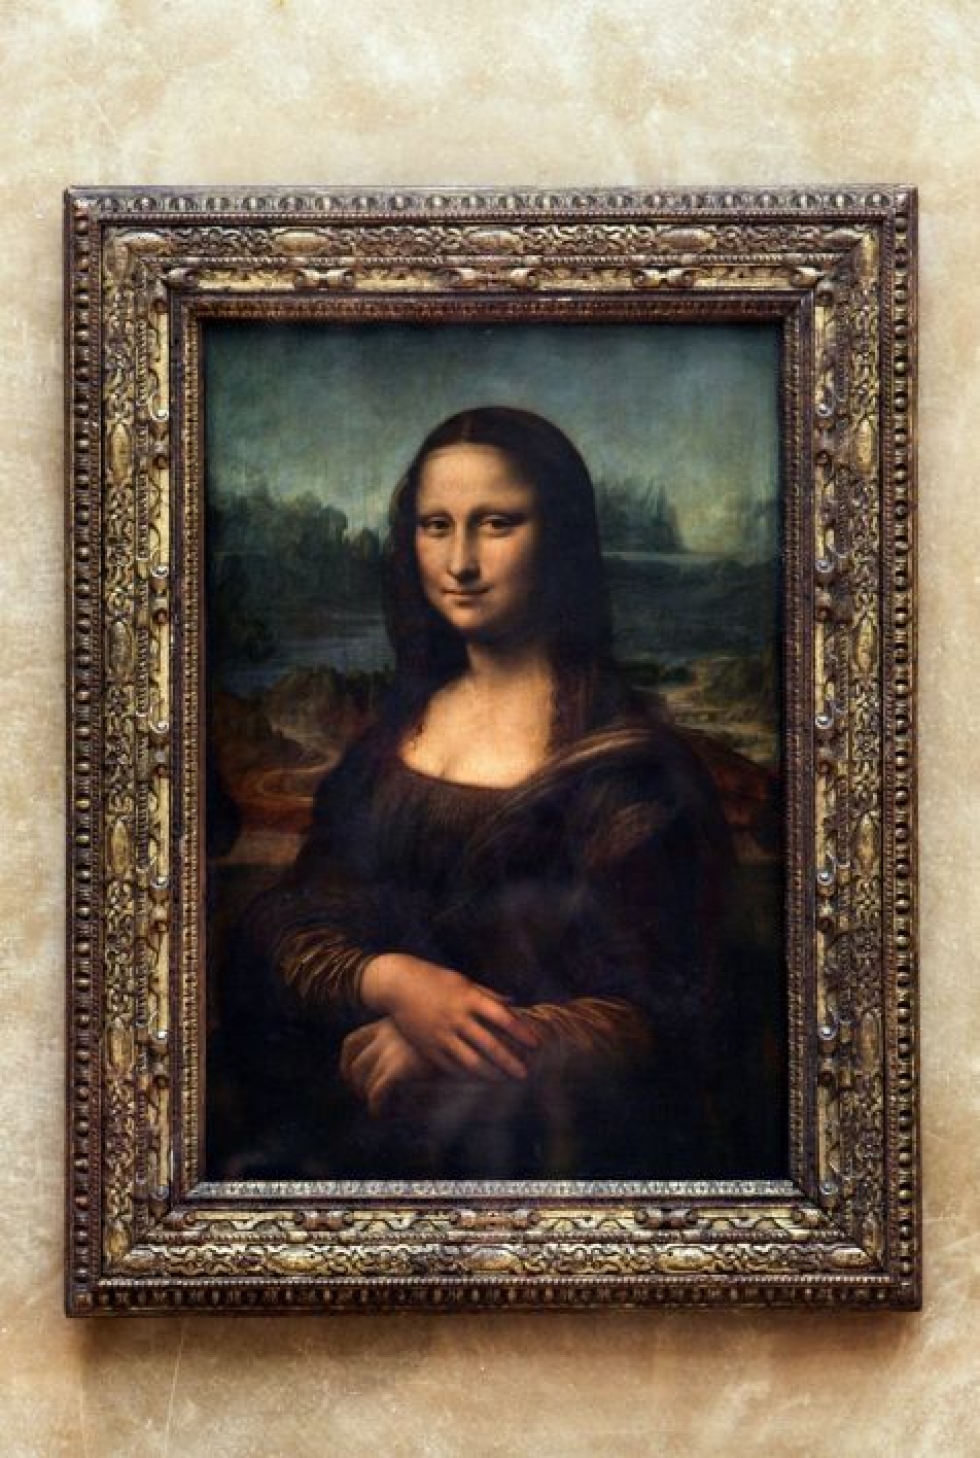 Leonardo Da Vincin merkkiteoksen Mona Lisan kotimuseossa on eniten vierailijoita maailmassa. Museosta on kuitenkin tullut oman menestyksensä uhri ja turistimagneetti kärsii ylikuormituksesta. LEHTIKUVA/AFP